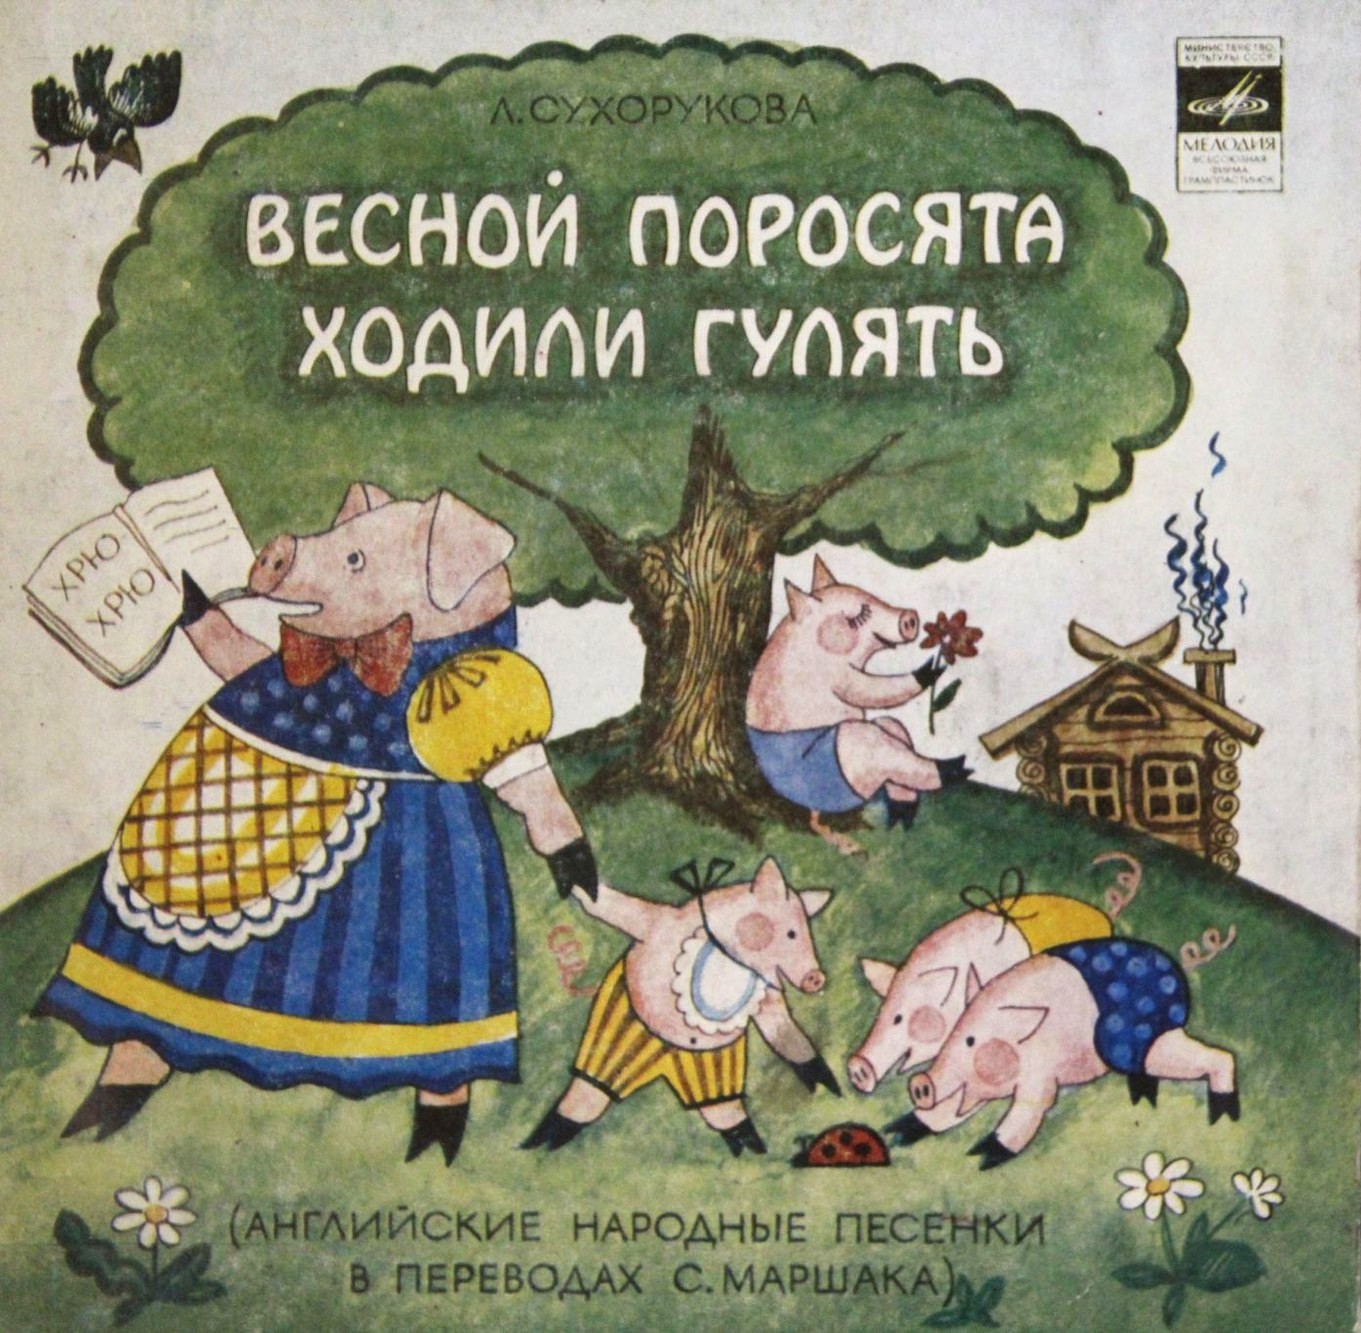 Л. СУХОРУКОВА (1950): «Весной поросята ходили гулять» (английские нар. песенки в переводах С. Маршака)